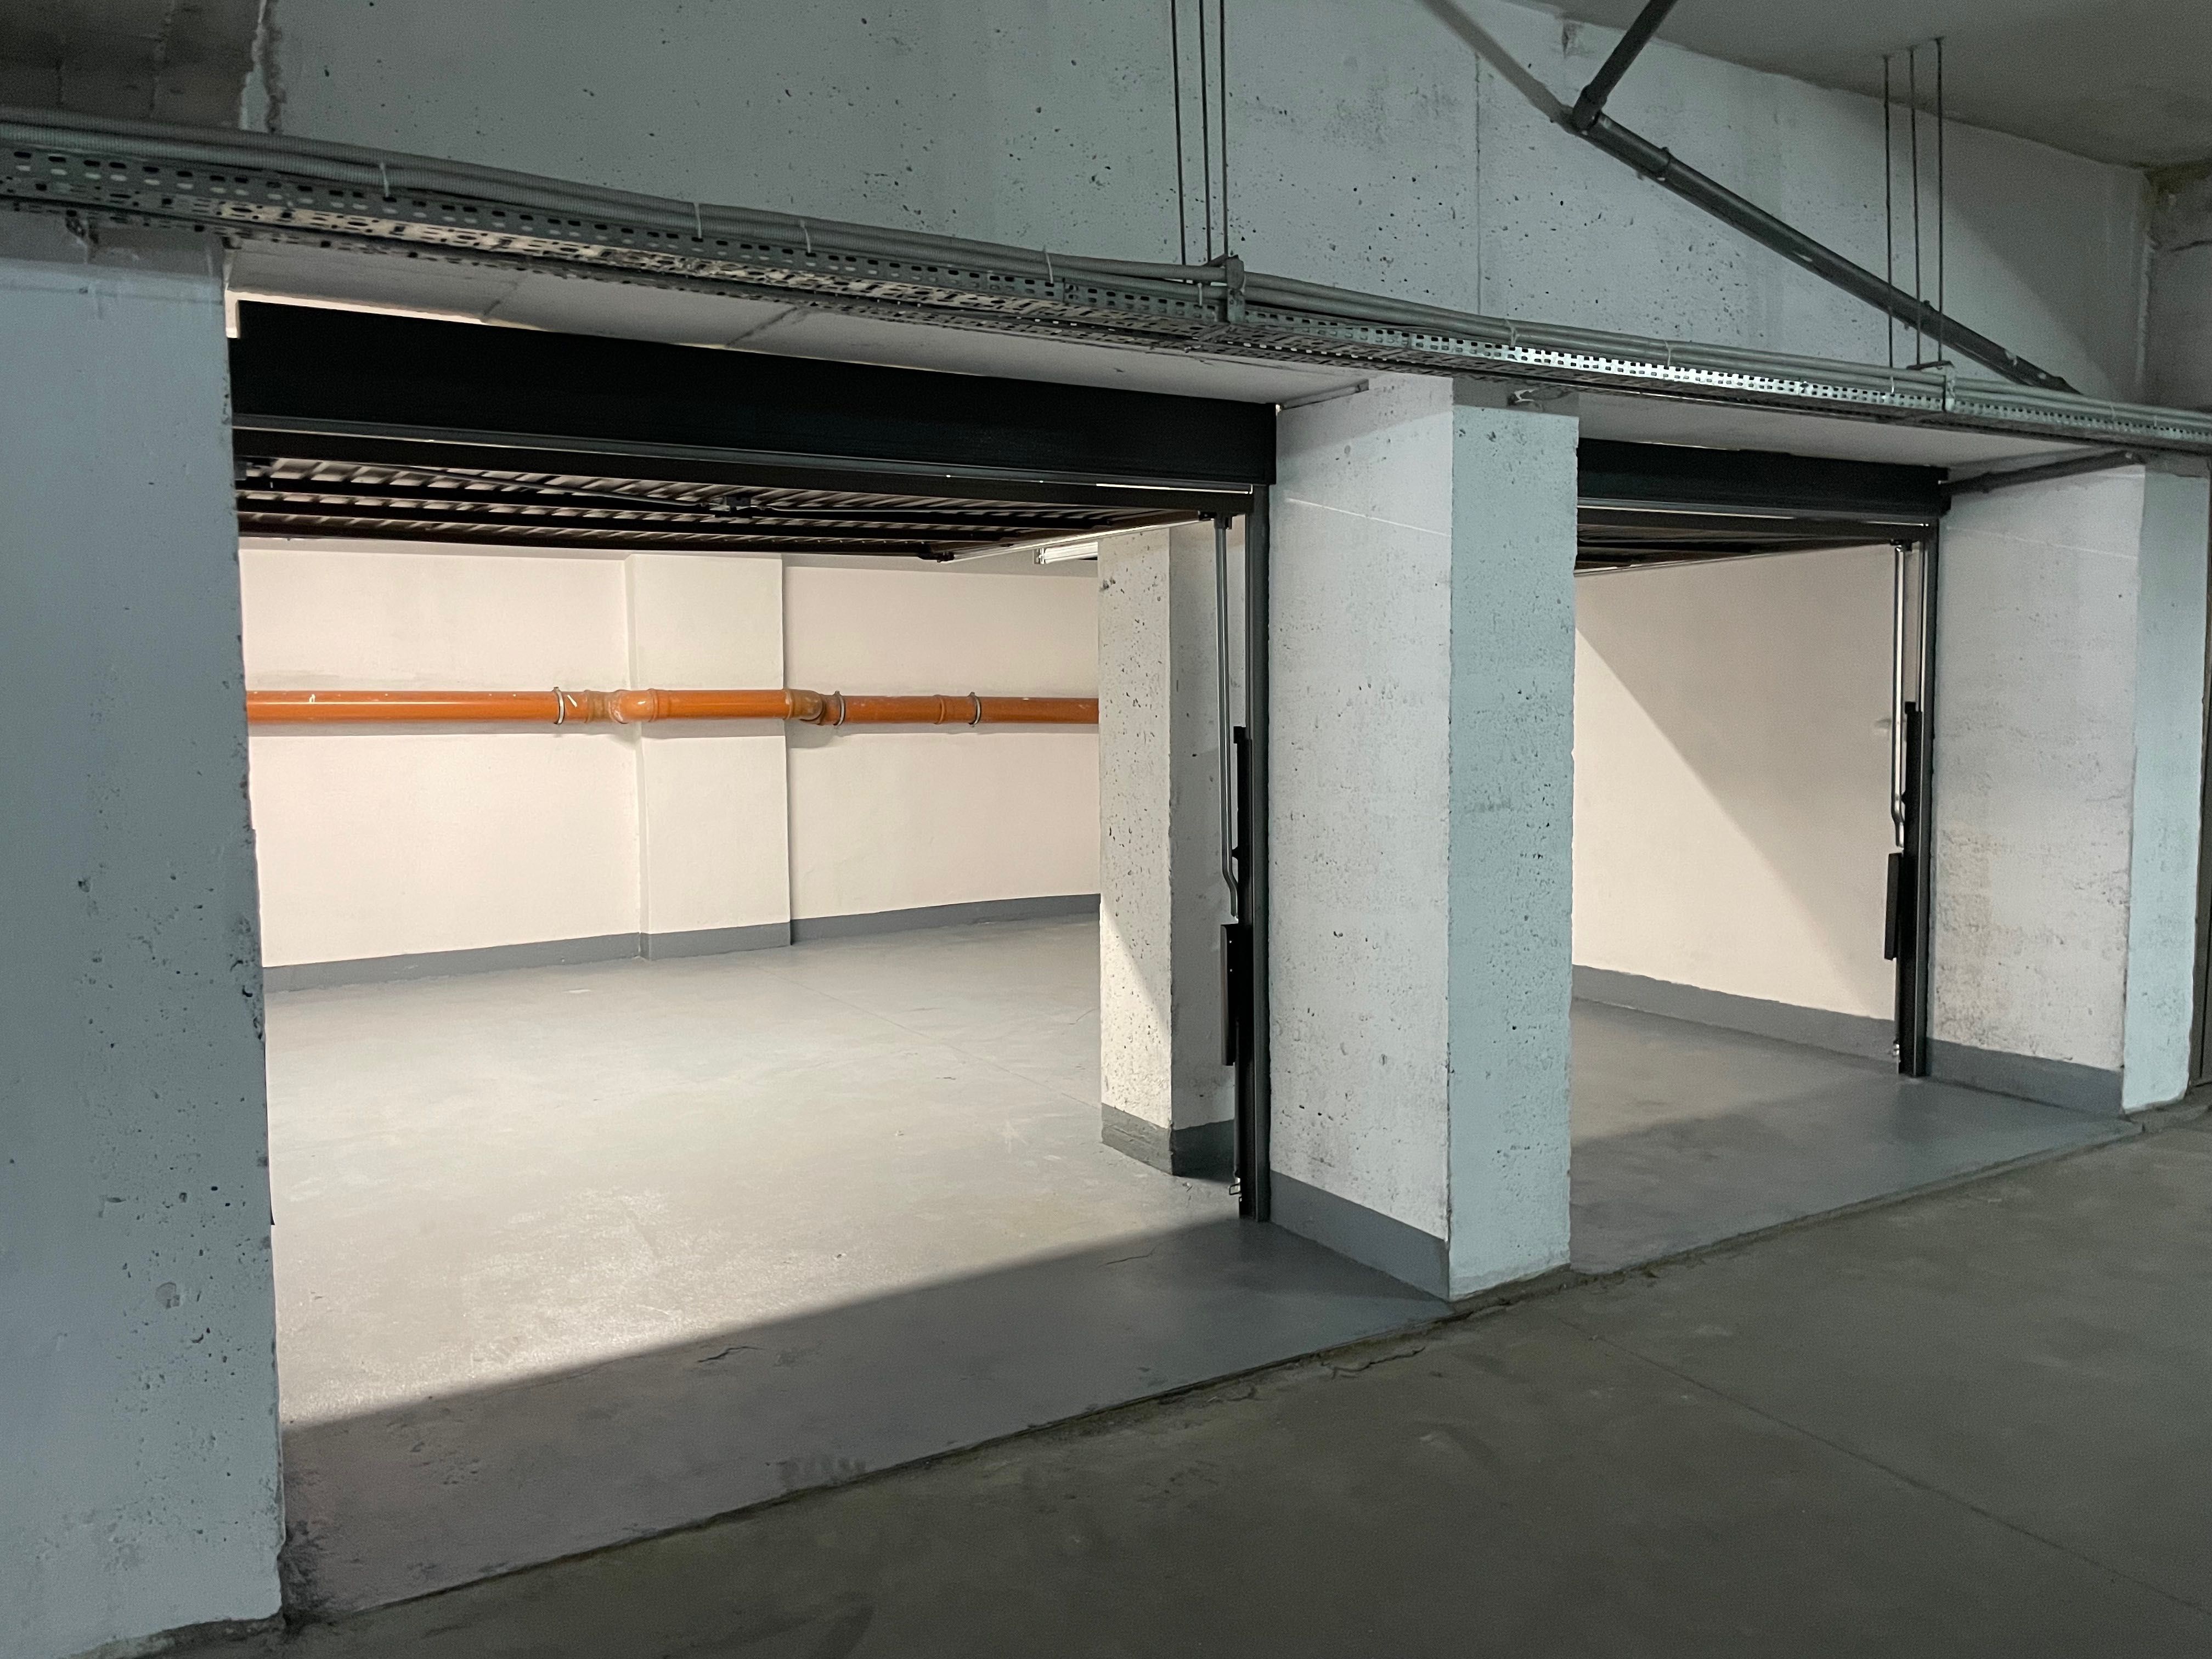 Dwa zamykane miejsce garażowe w hali pod budynkiem